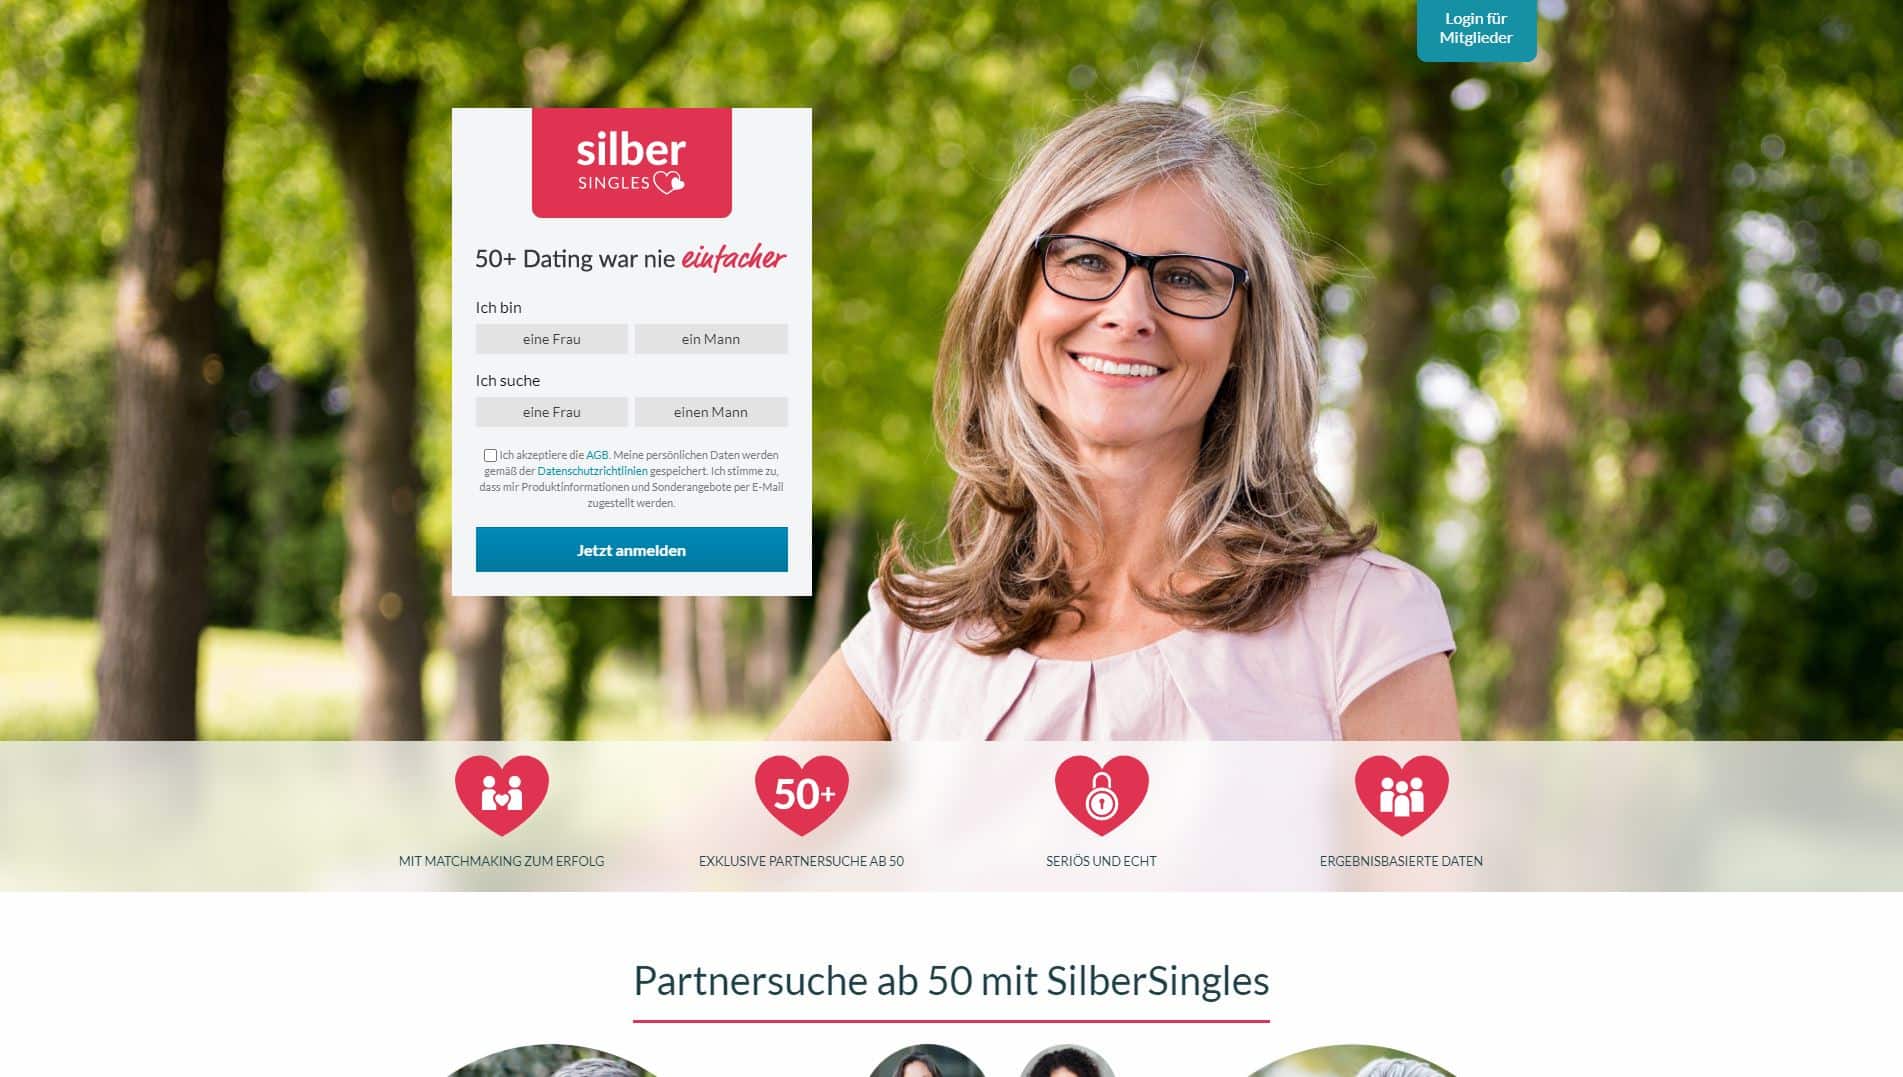 Senior dating sites über 60 2020